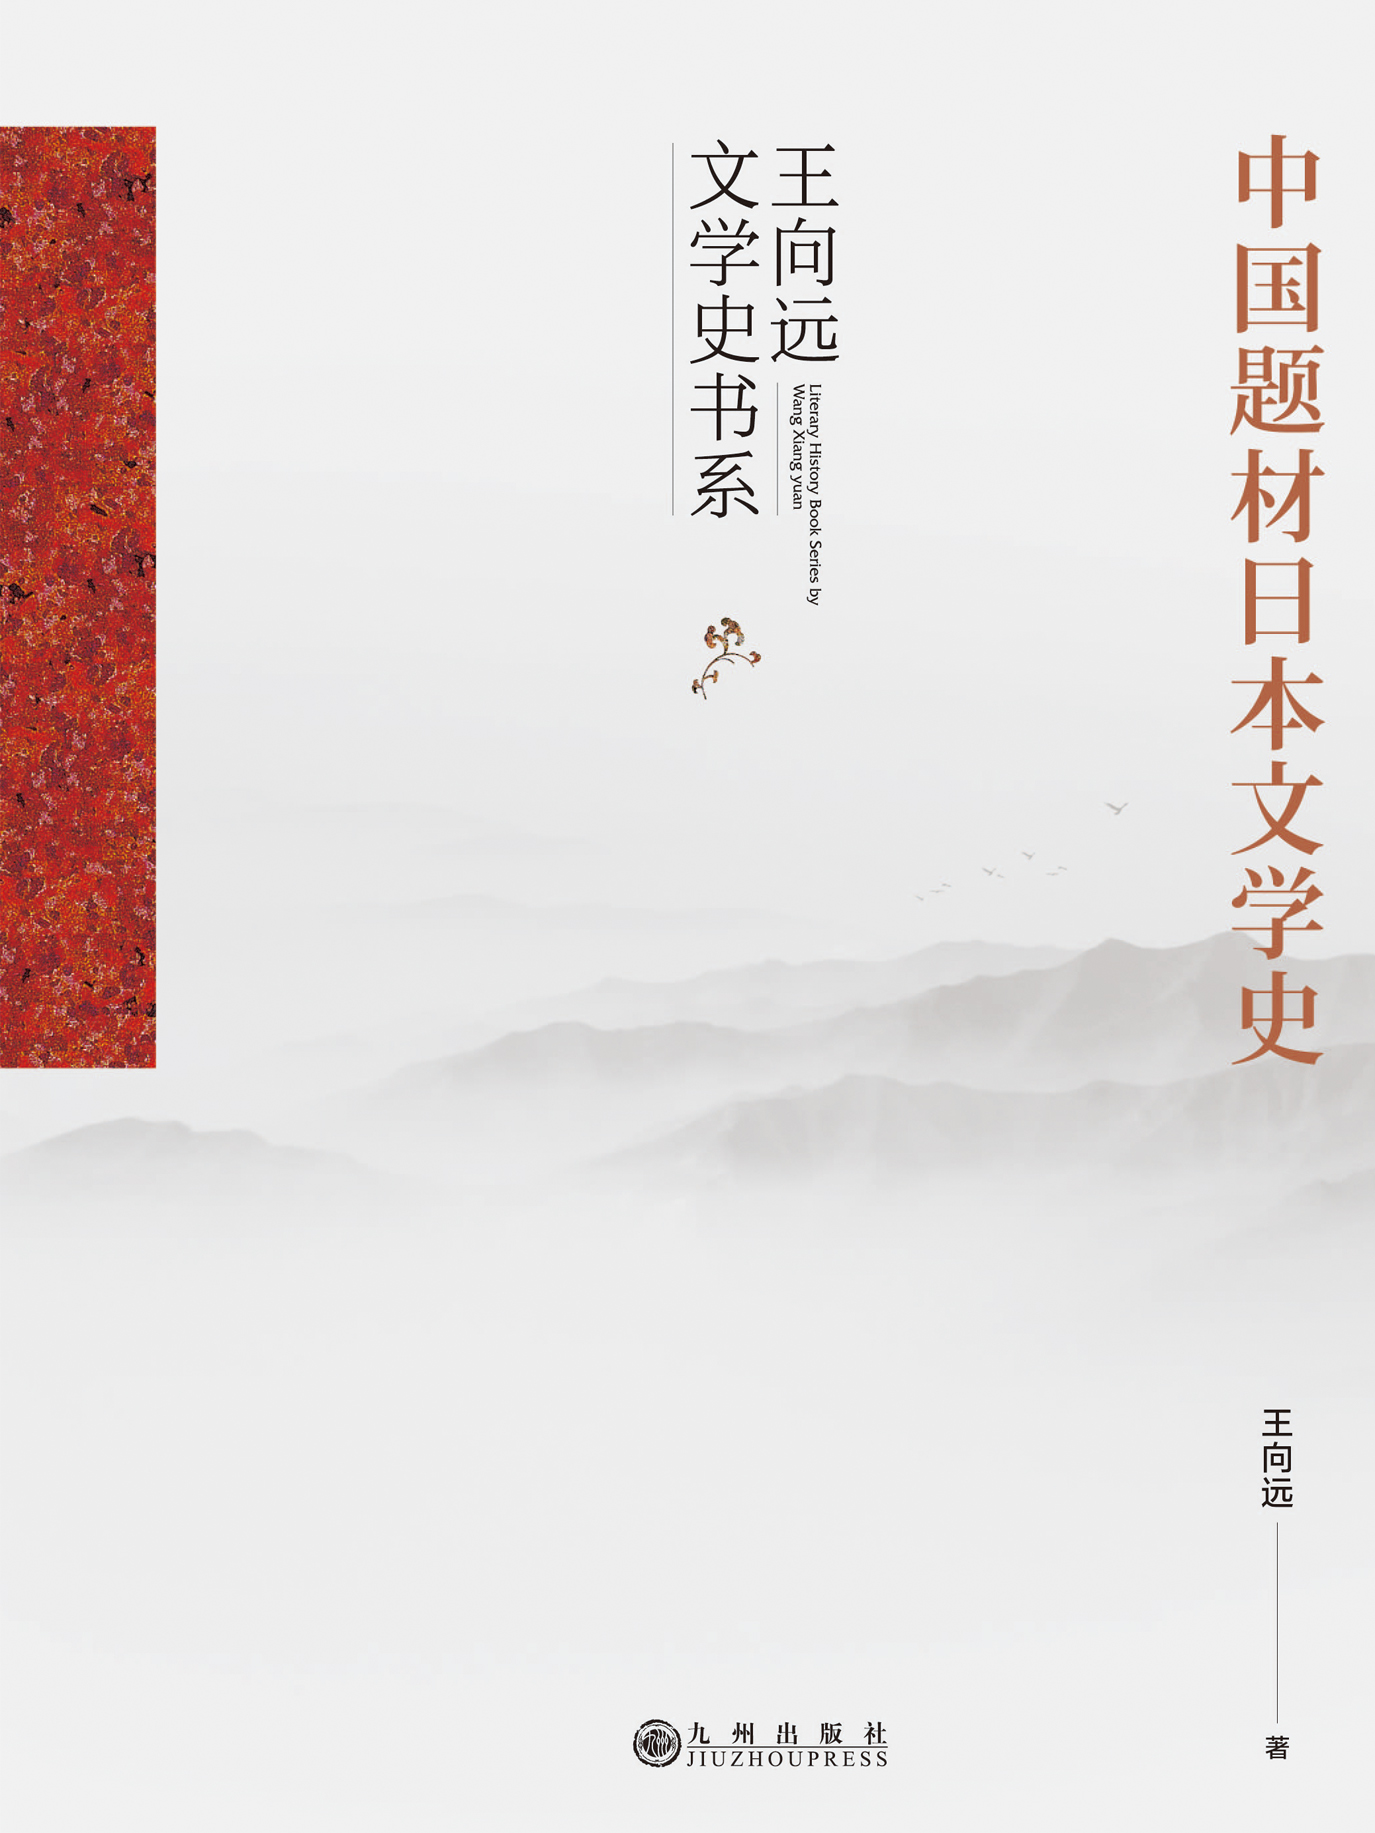 中国题材日本文学史